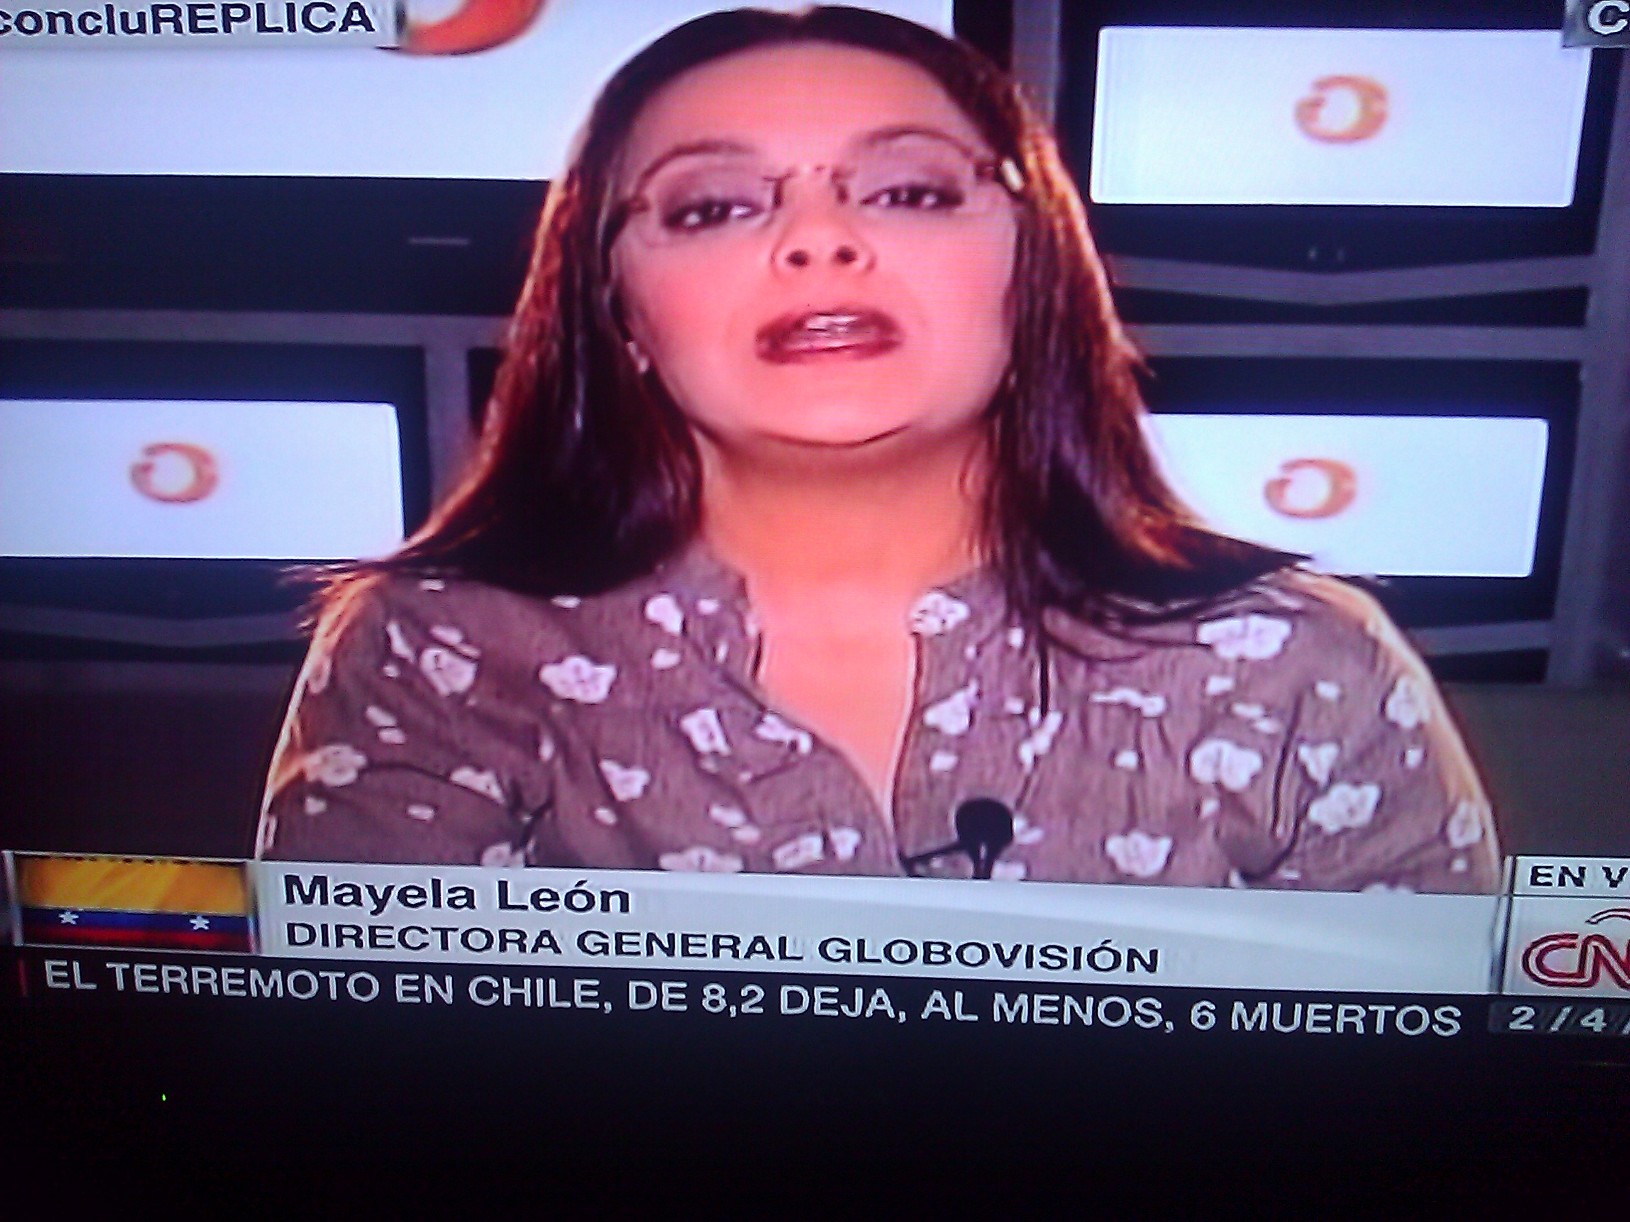 Globovisión “aclara” en CNN por qué no transmitió video de GNB y colectivos trabajando juntos